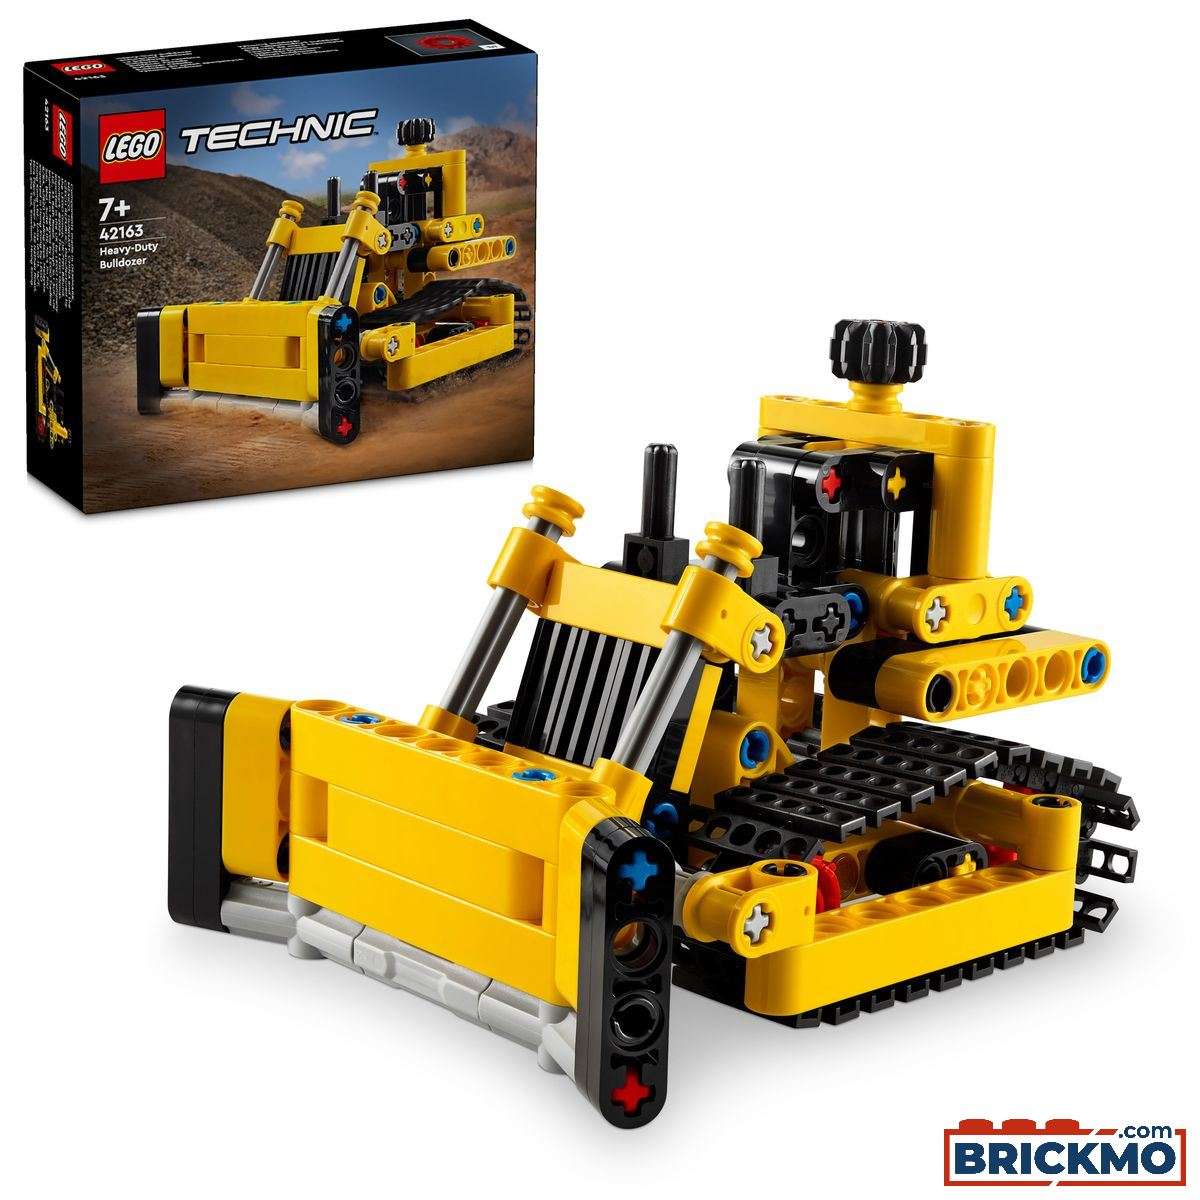 LEGO Technic 42163 Heavy-Duty Bulldozer 42163